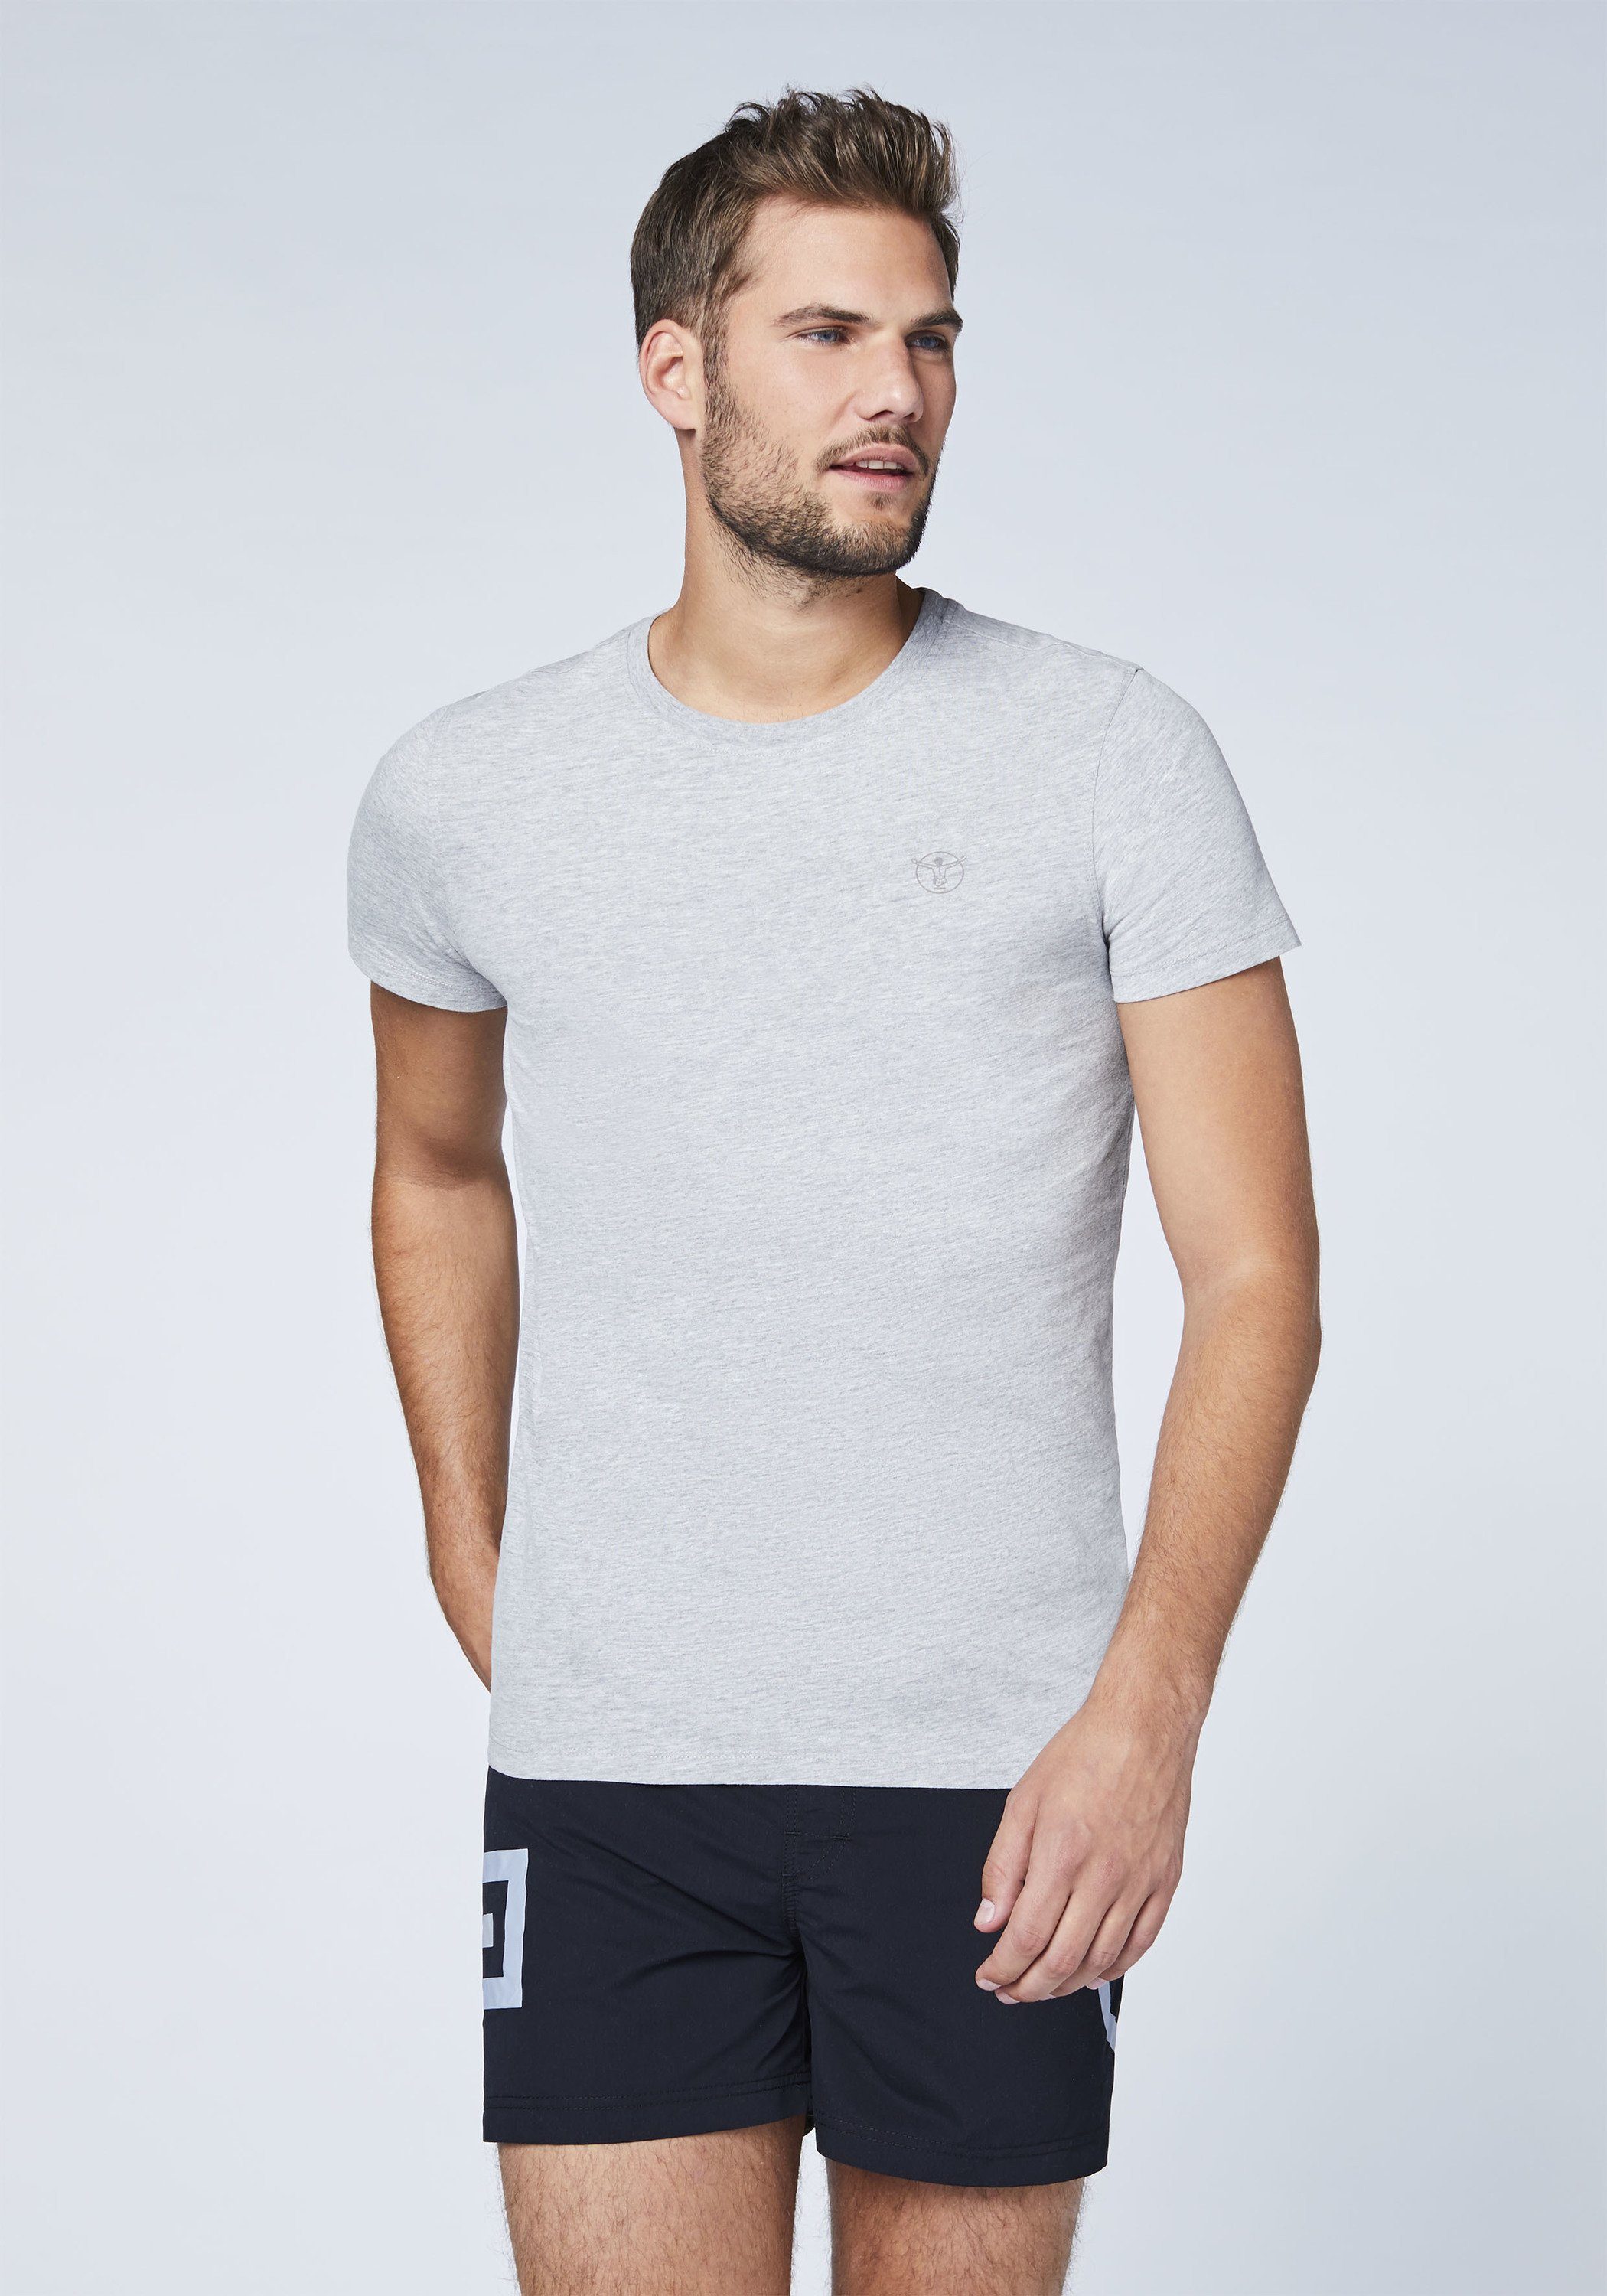 Chiemsee Print-Shirt T-Shirts im Basic-Stil Grey 2 Neutr, Logo mit Mel